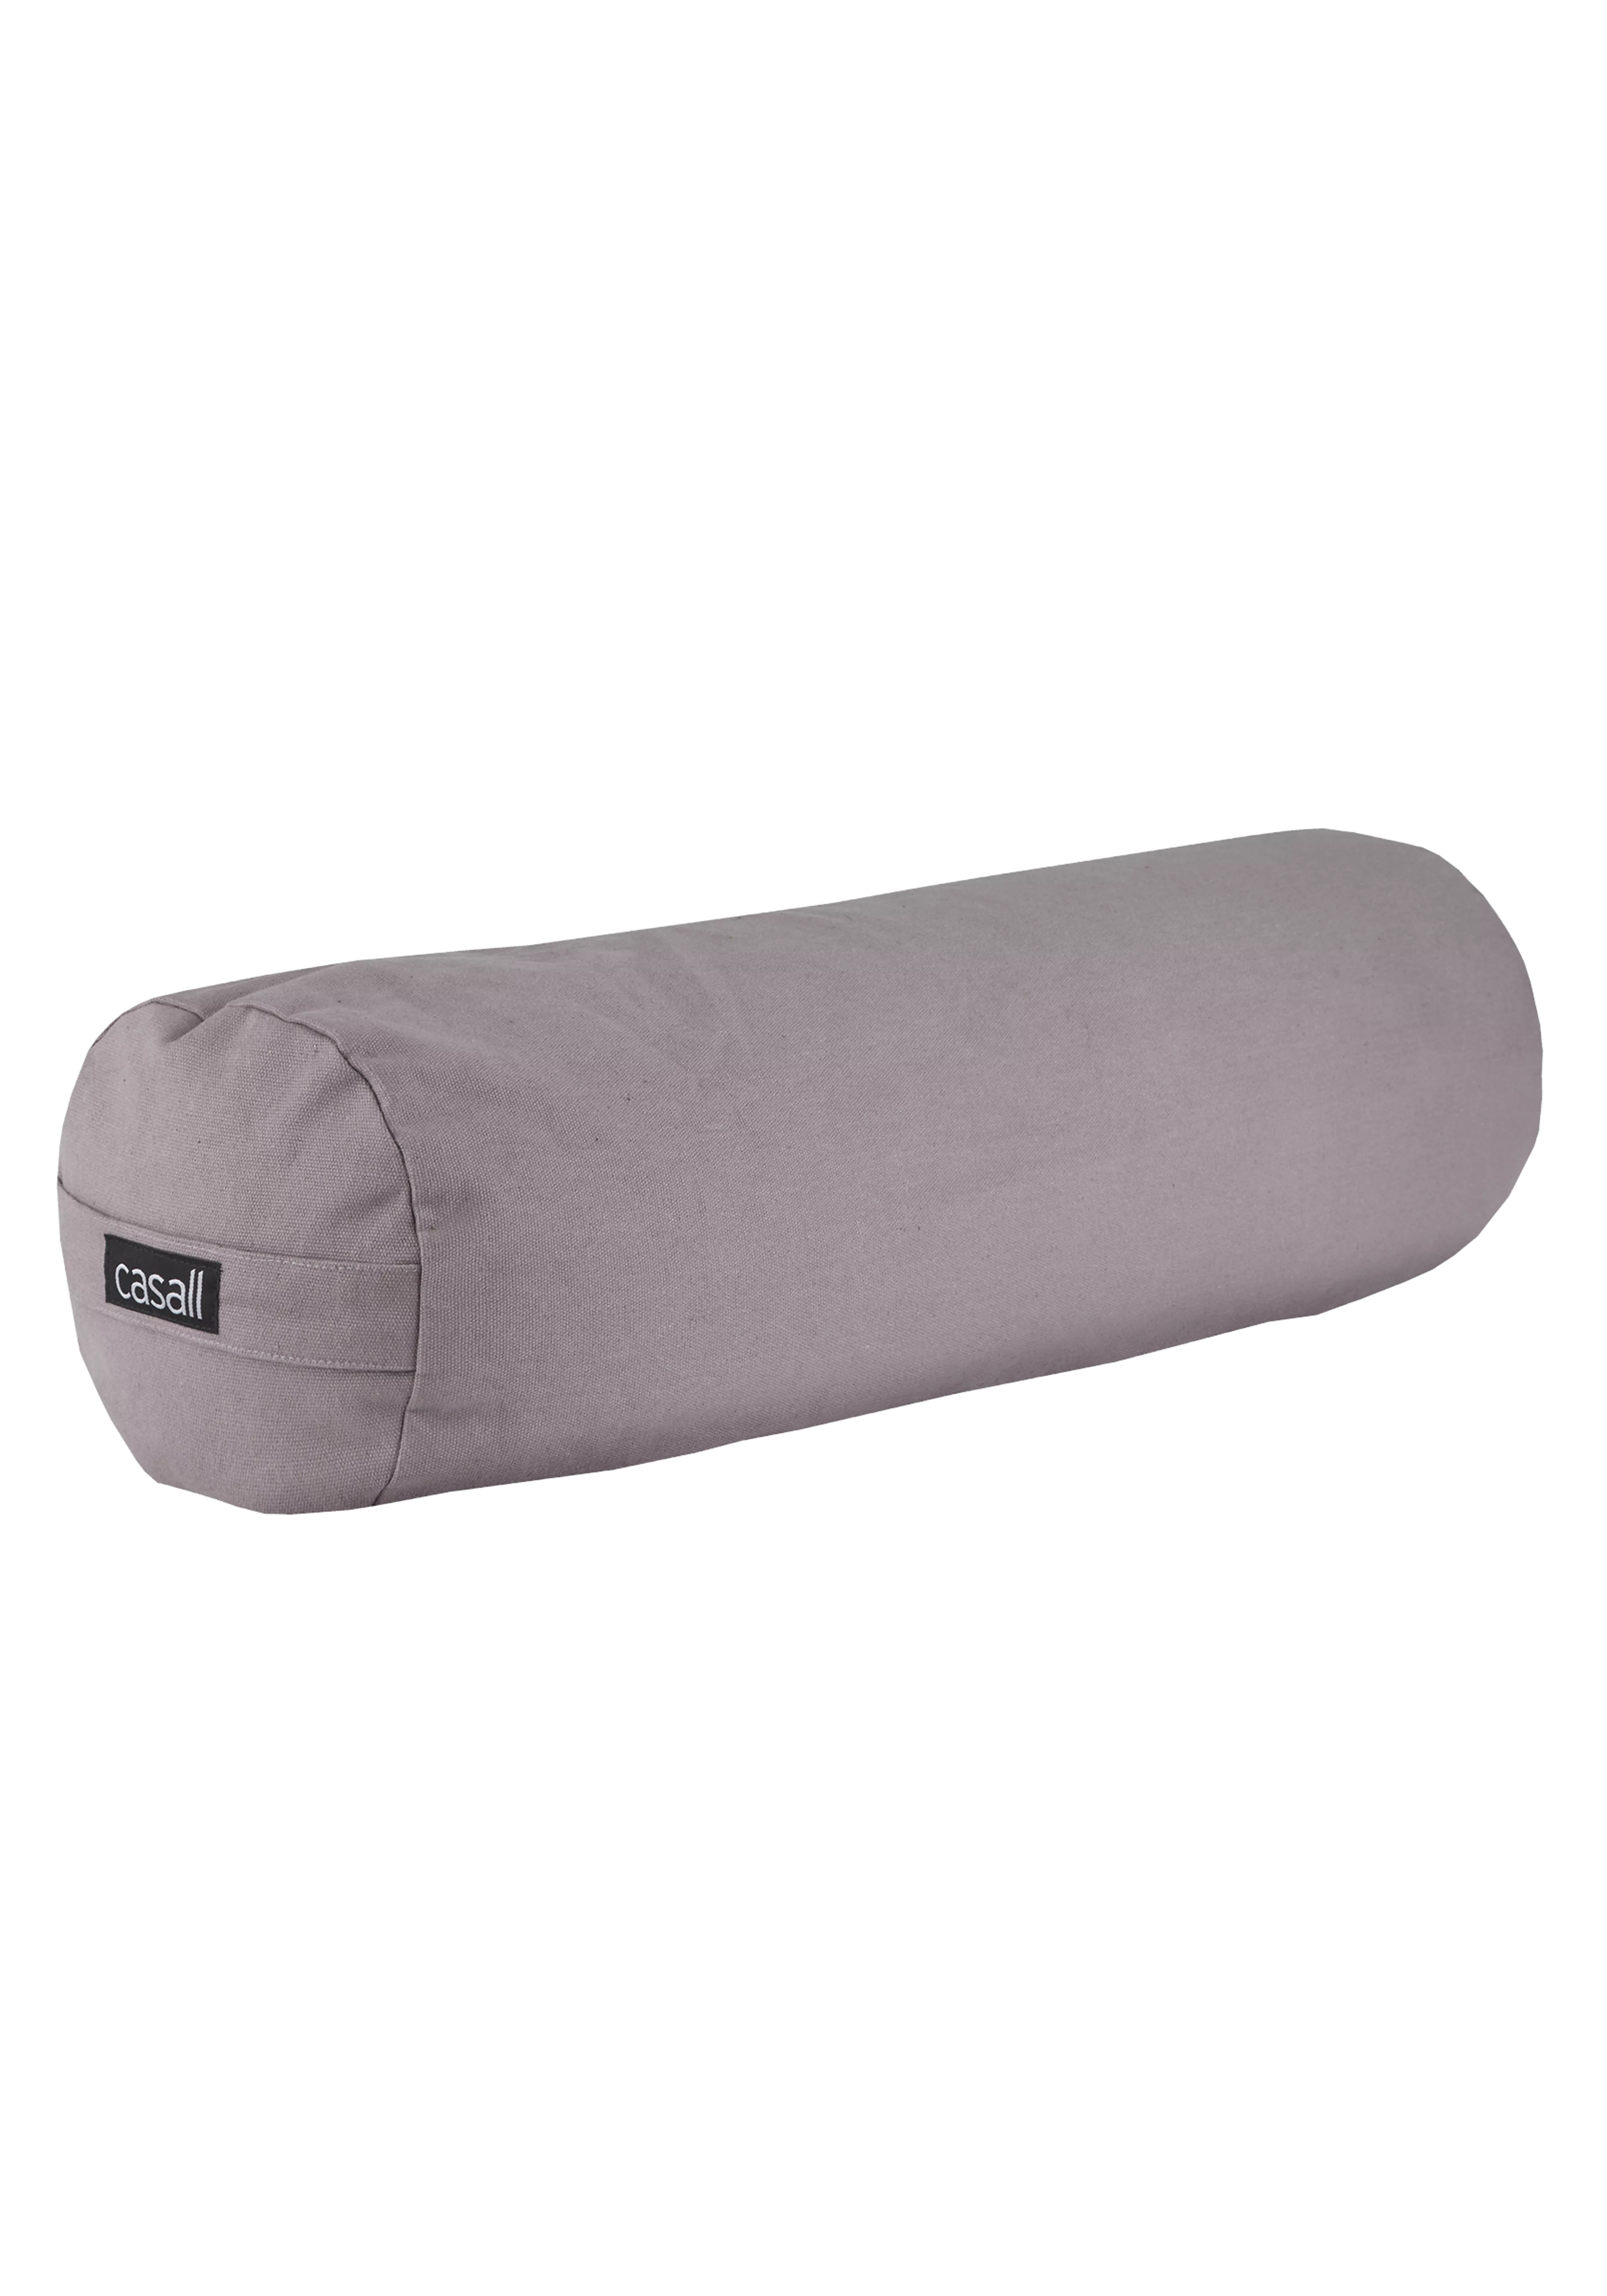 Yoga bolster pillow